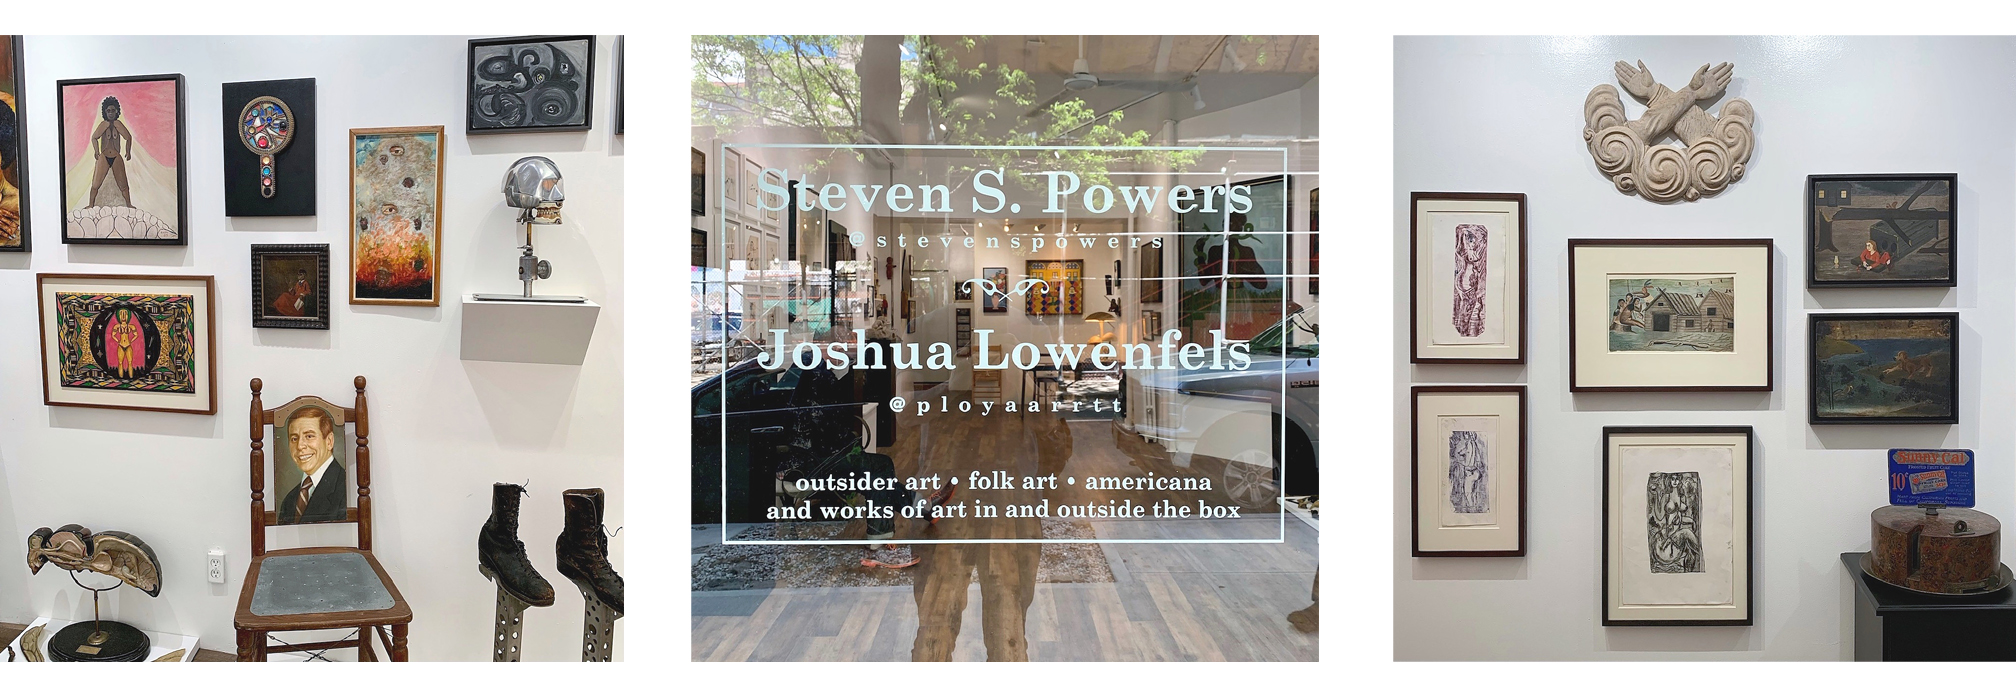 Powers Lowenfels Combined 2